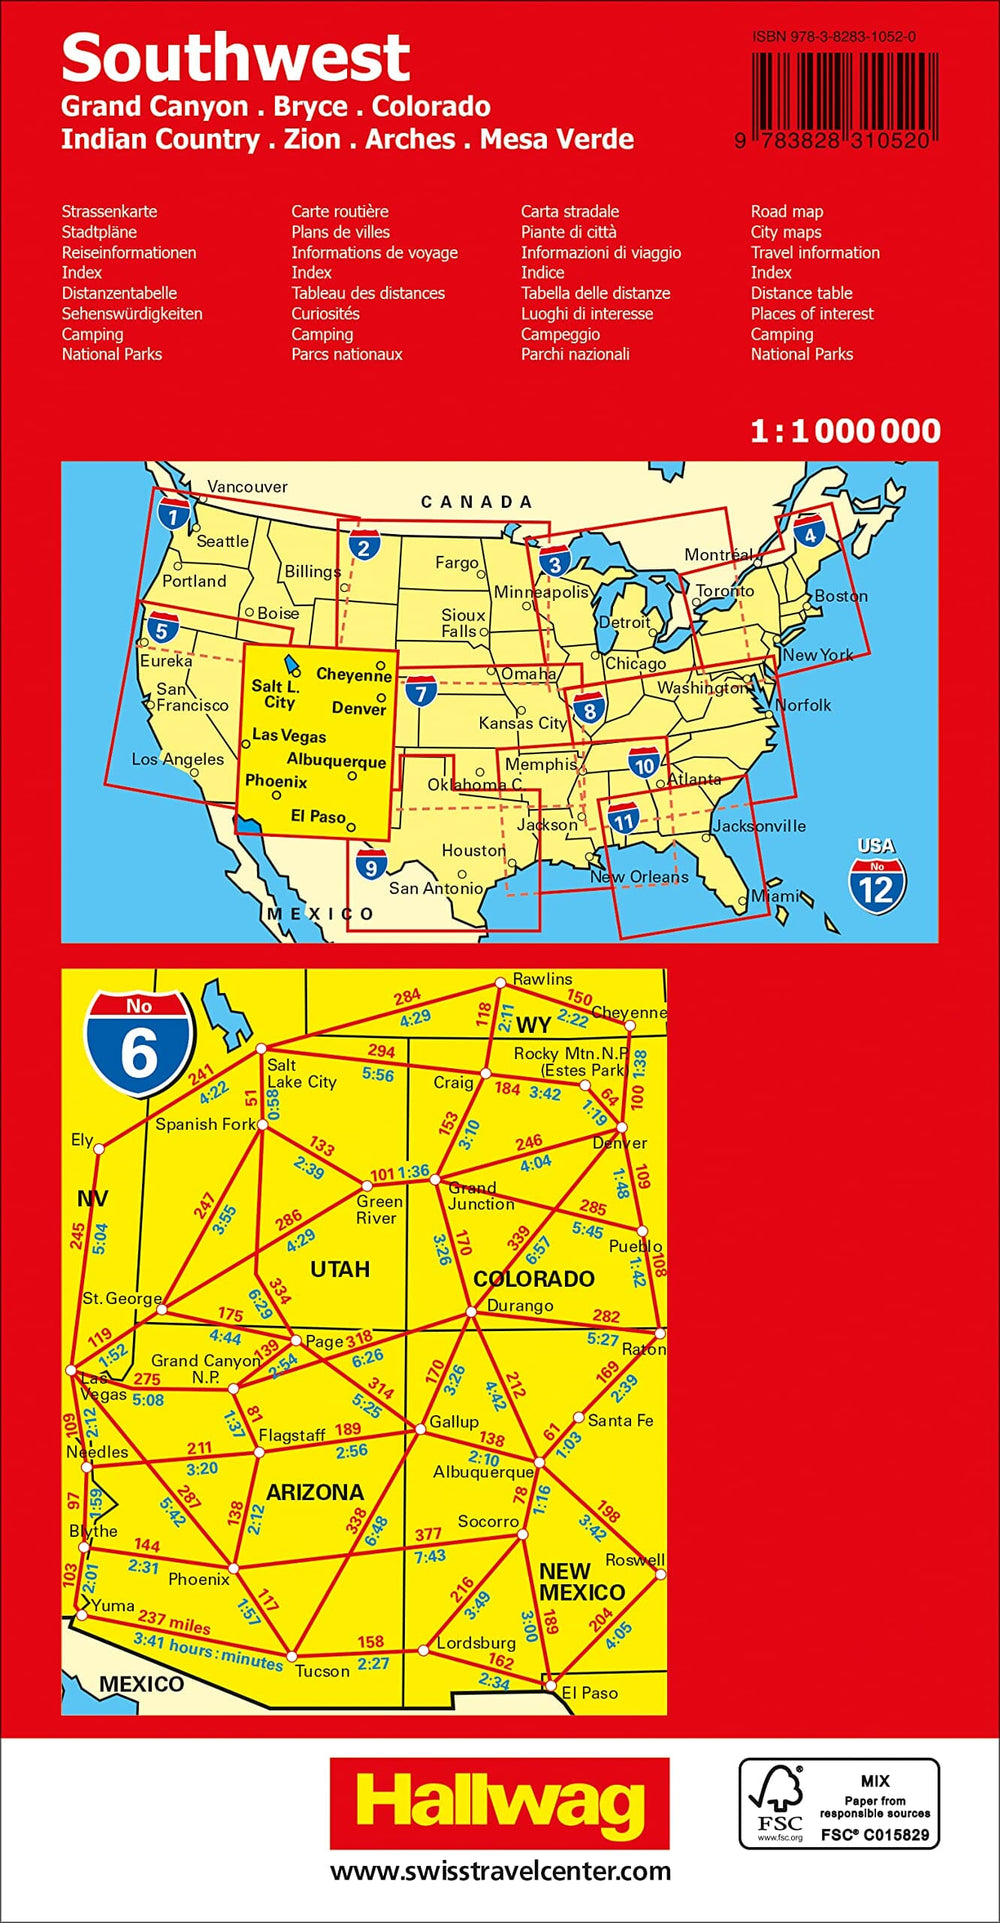 Carte routière n° 6 - USA Sud-Ouest (Sud des Rocheuses, Canyon Country) | Hallwag carte pliée Hallwag 